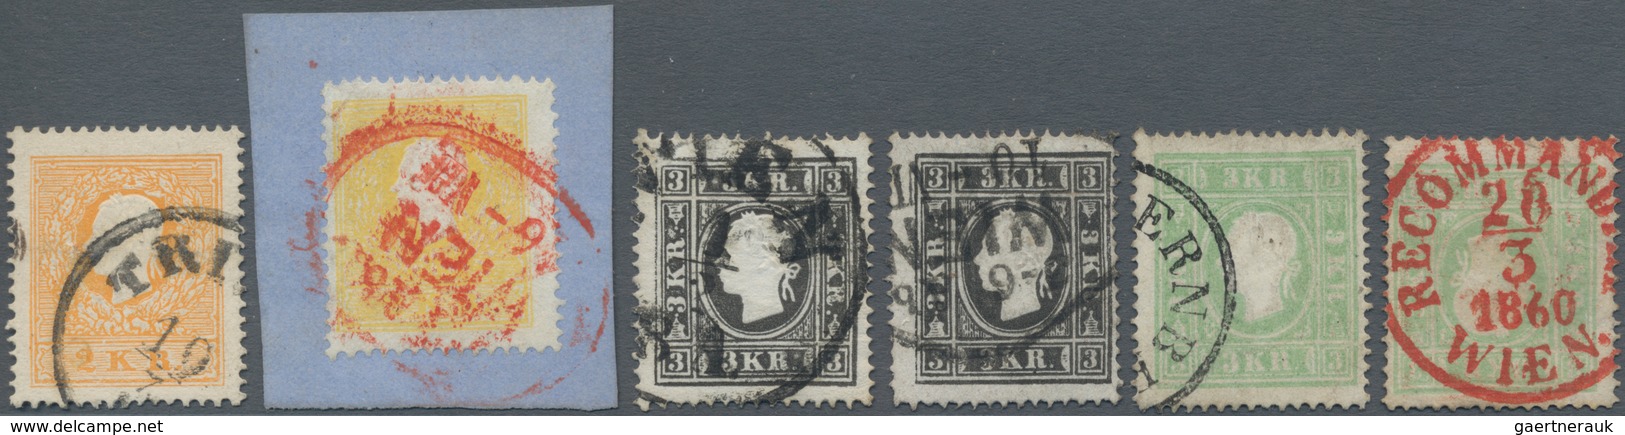 Österreich: 1858/1859, Sechs Werte In Type II Dabei 2 Kr. Gelb (Bfstk. Mit Rotstpl.) Und Orange Sowi - Gebruikt